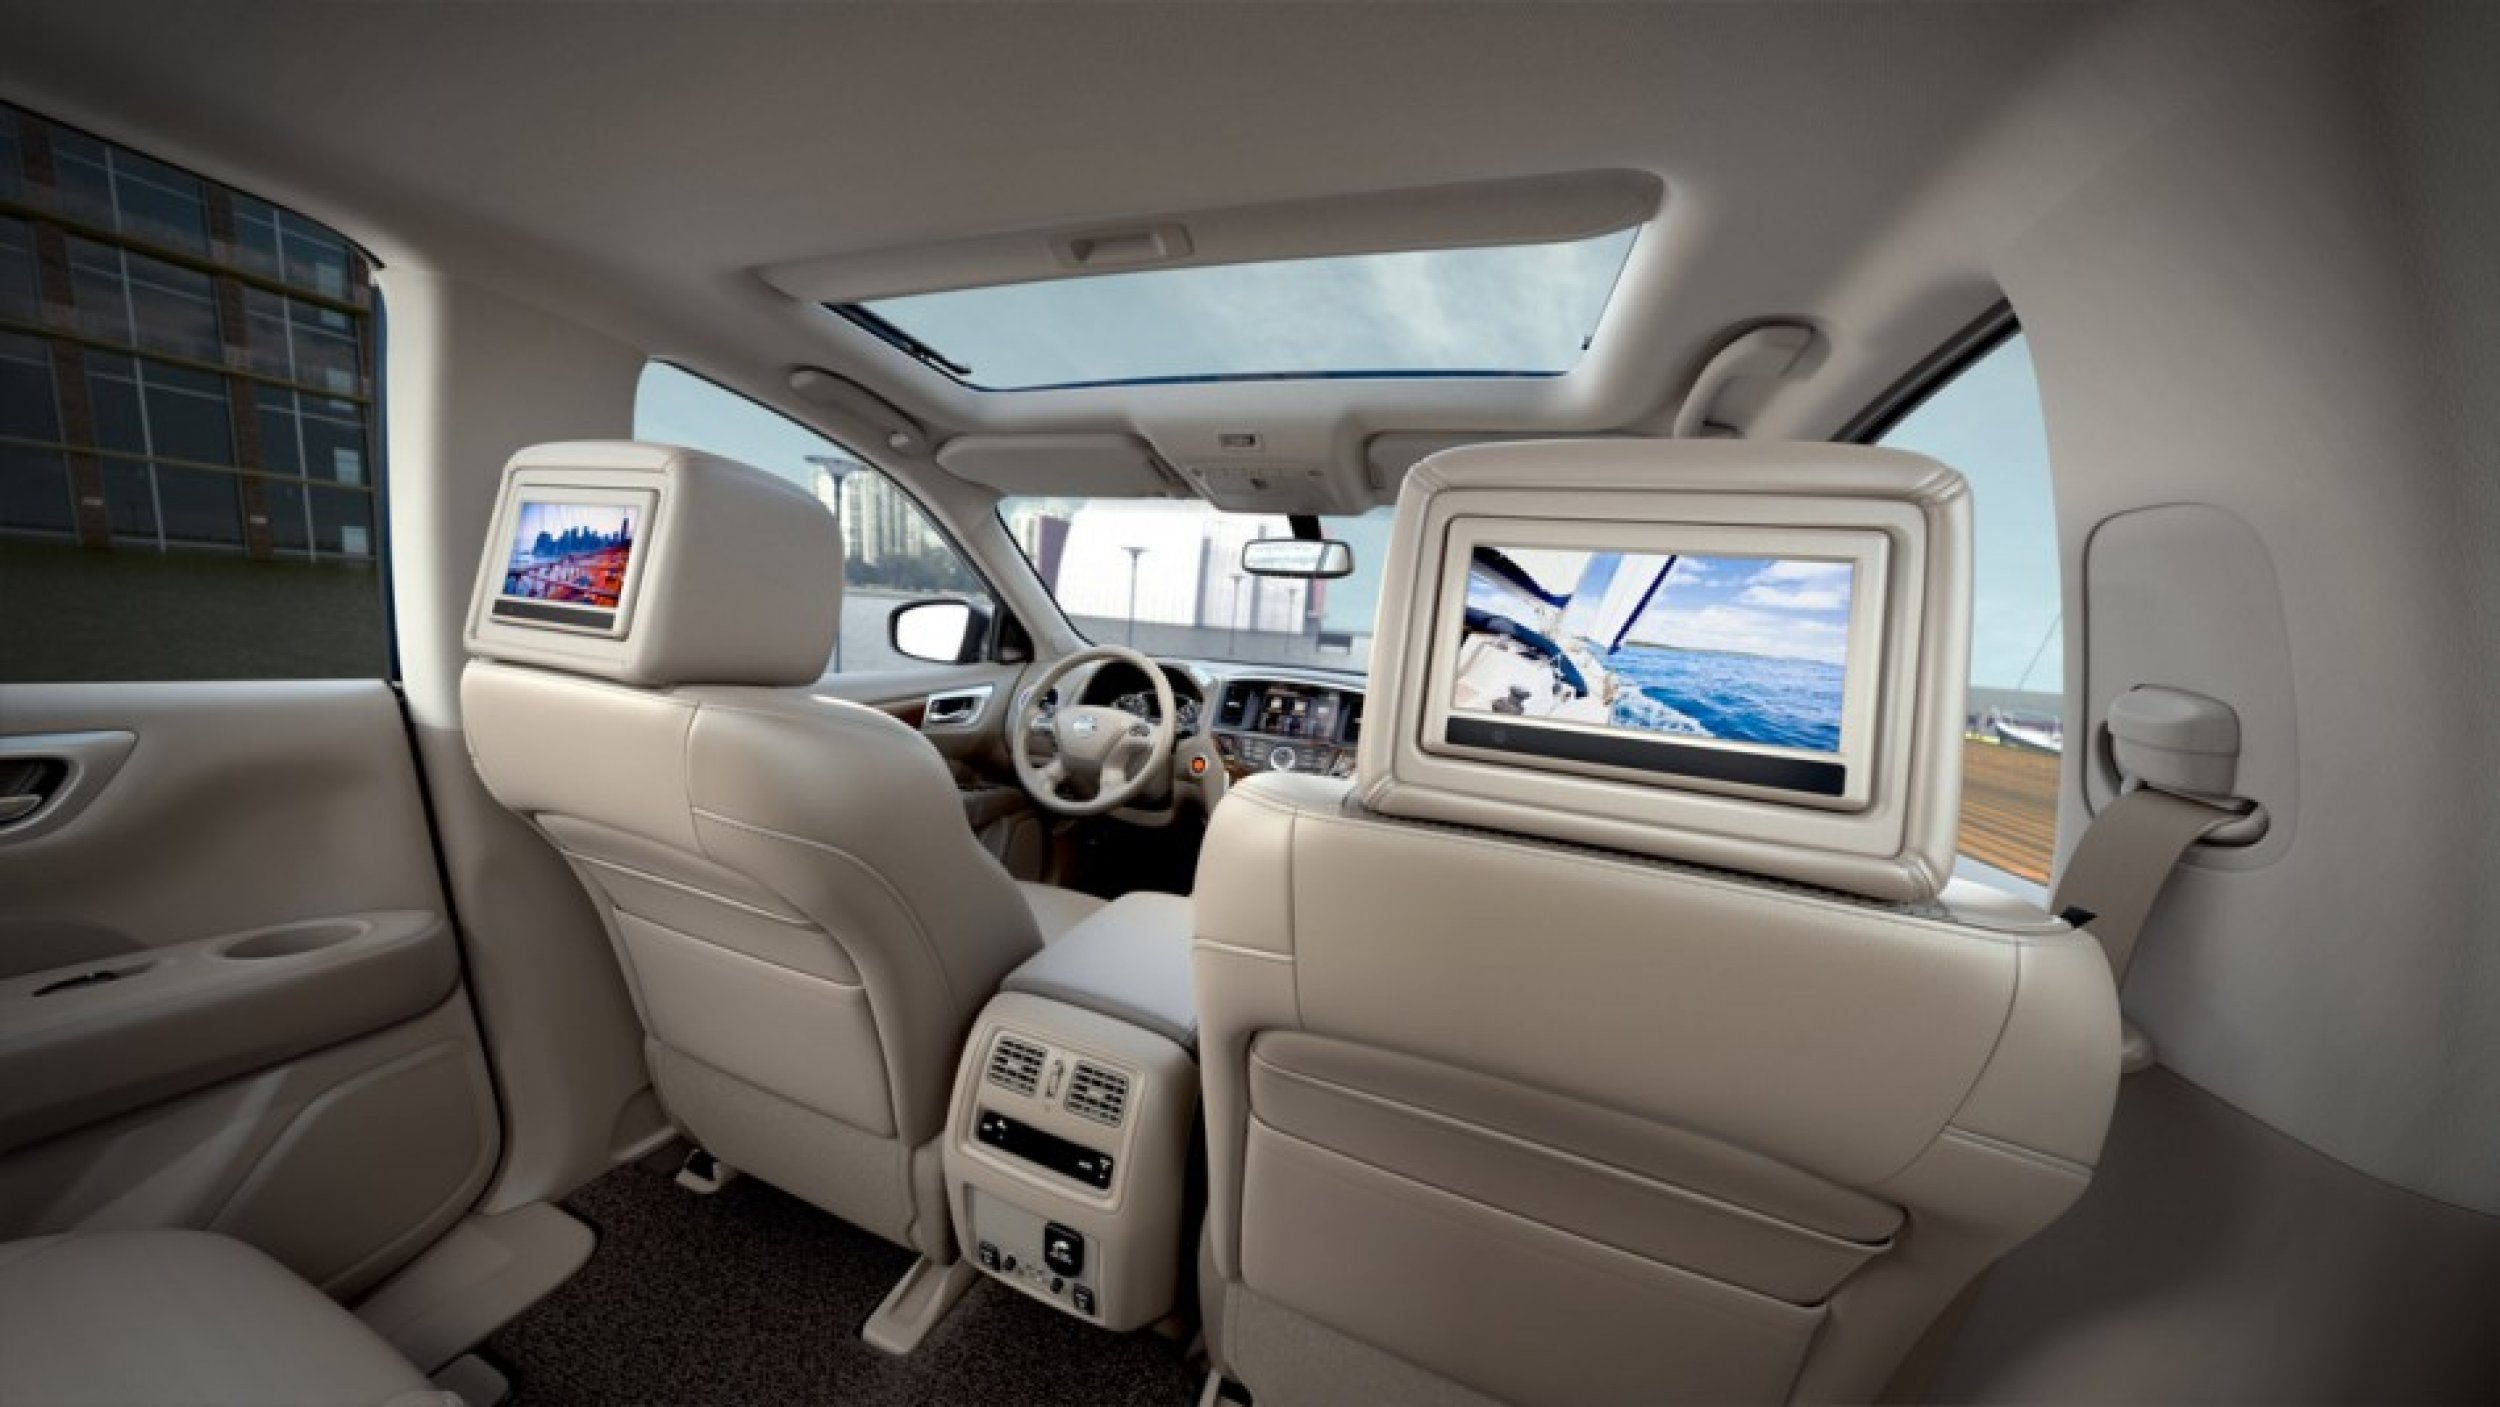 Nissan Pathfinder 2013 Interior